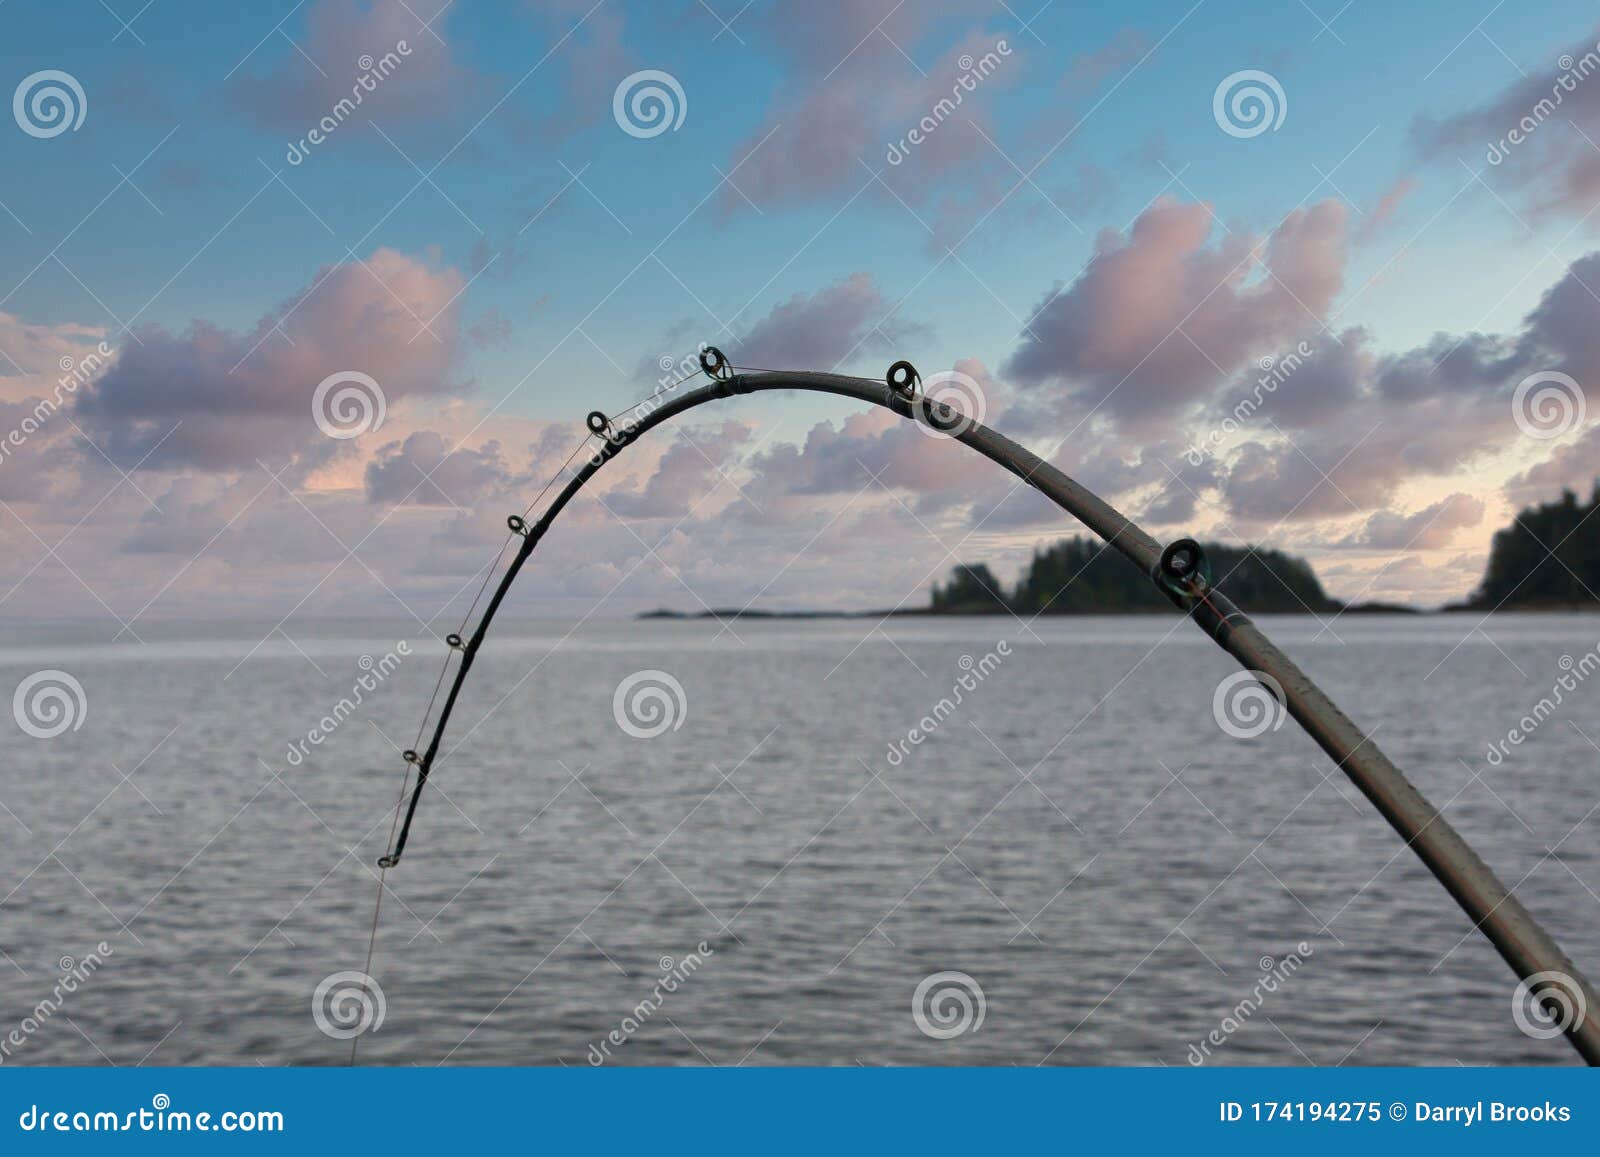 Bent Fishing Pole at Dusk stock image. Image of pole - 174194275